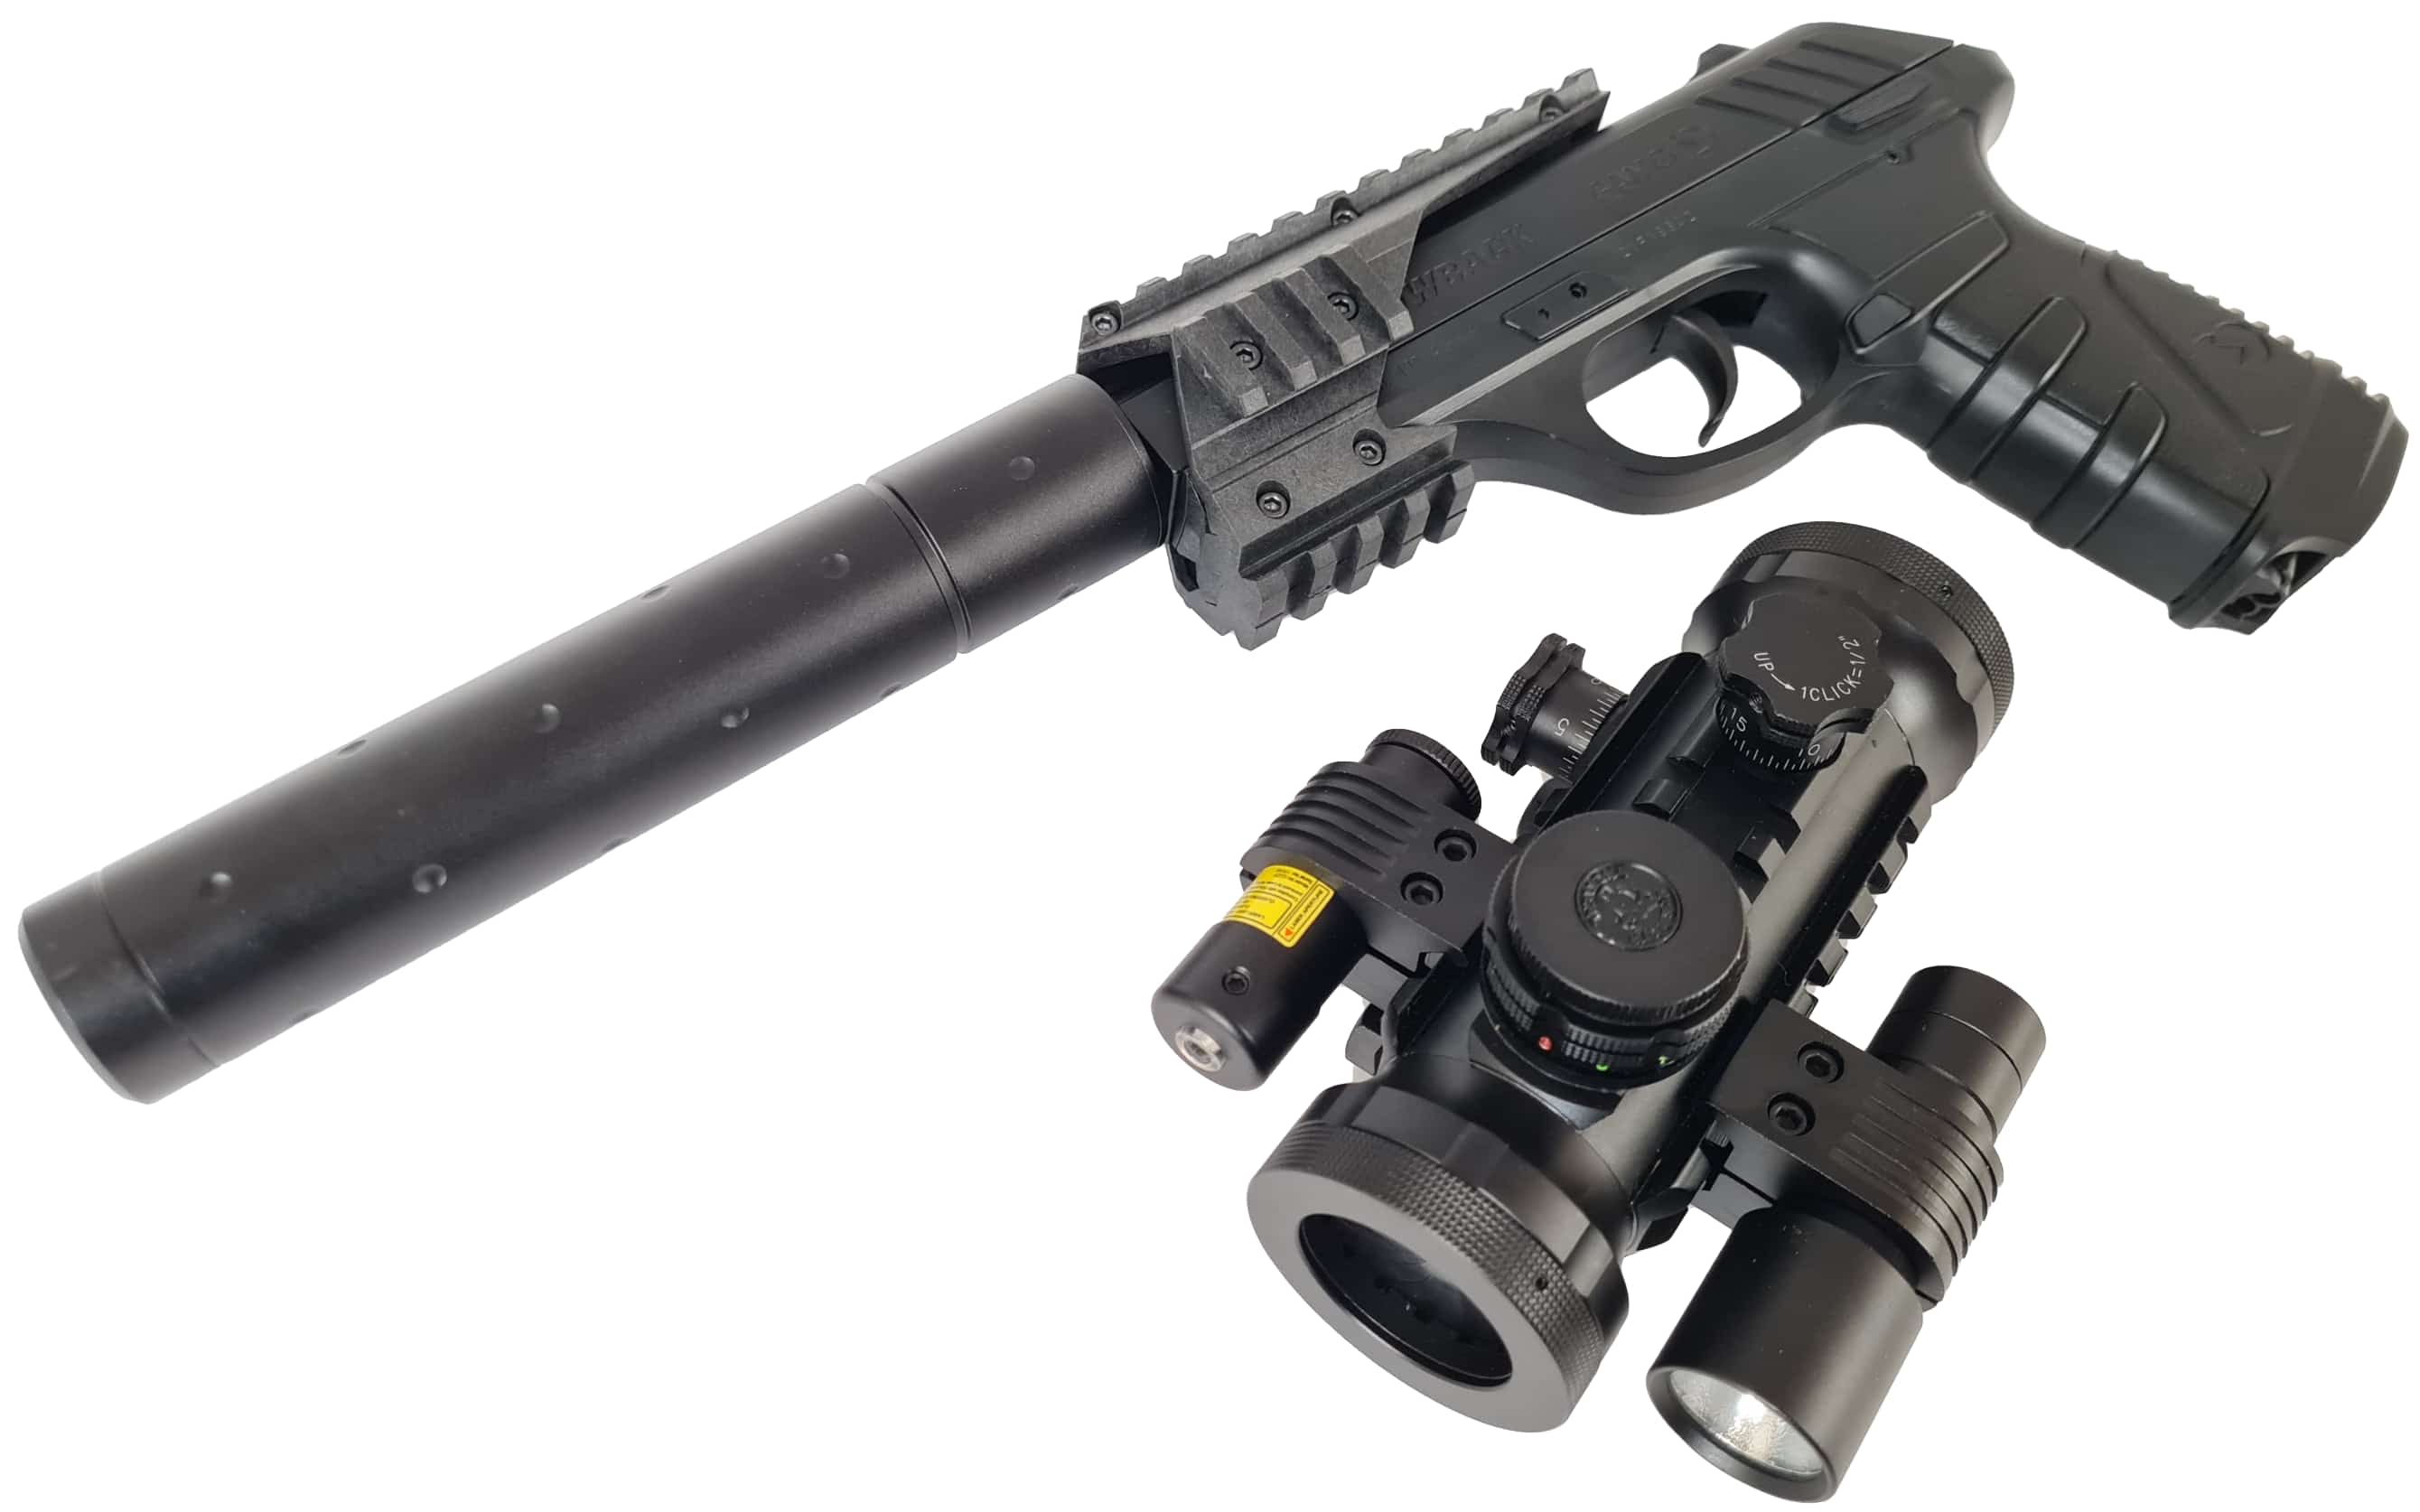 Pack Pistola P-25 Blowback Tactical + Visor + Linterna + Laser